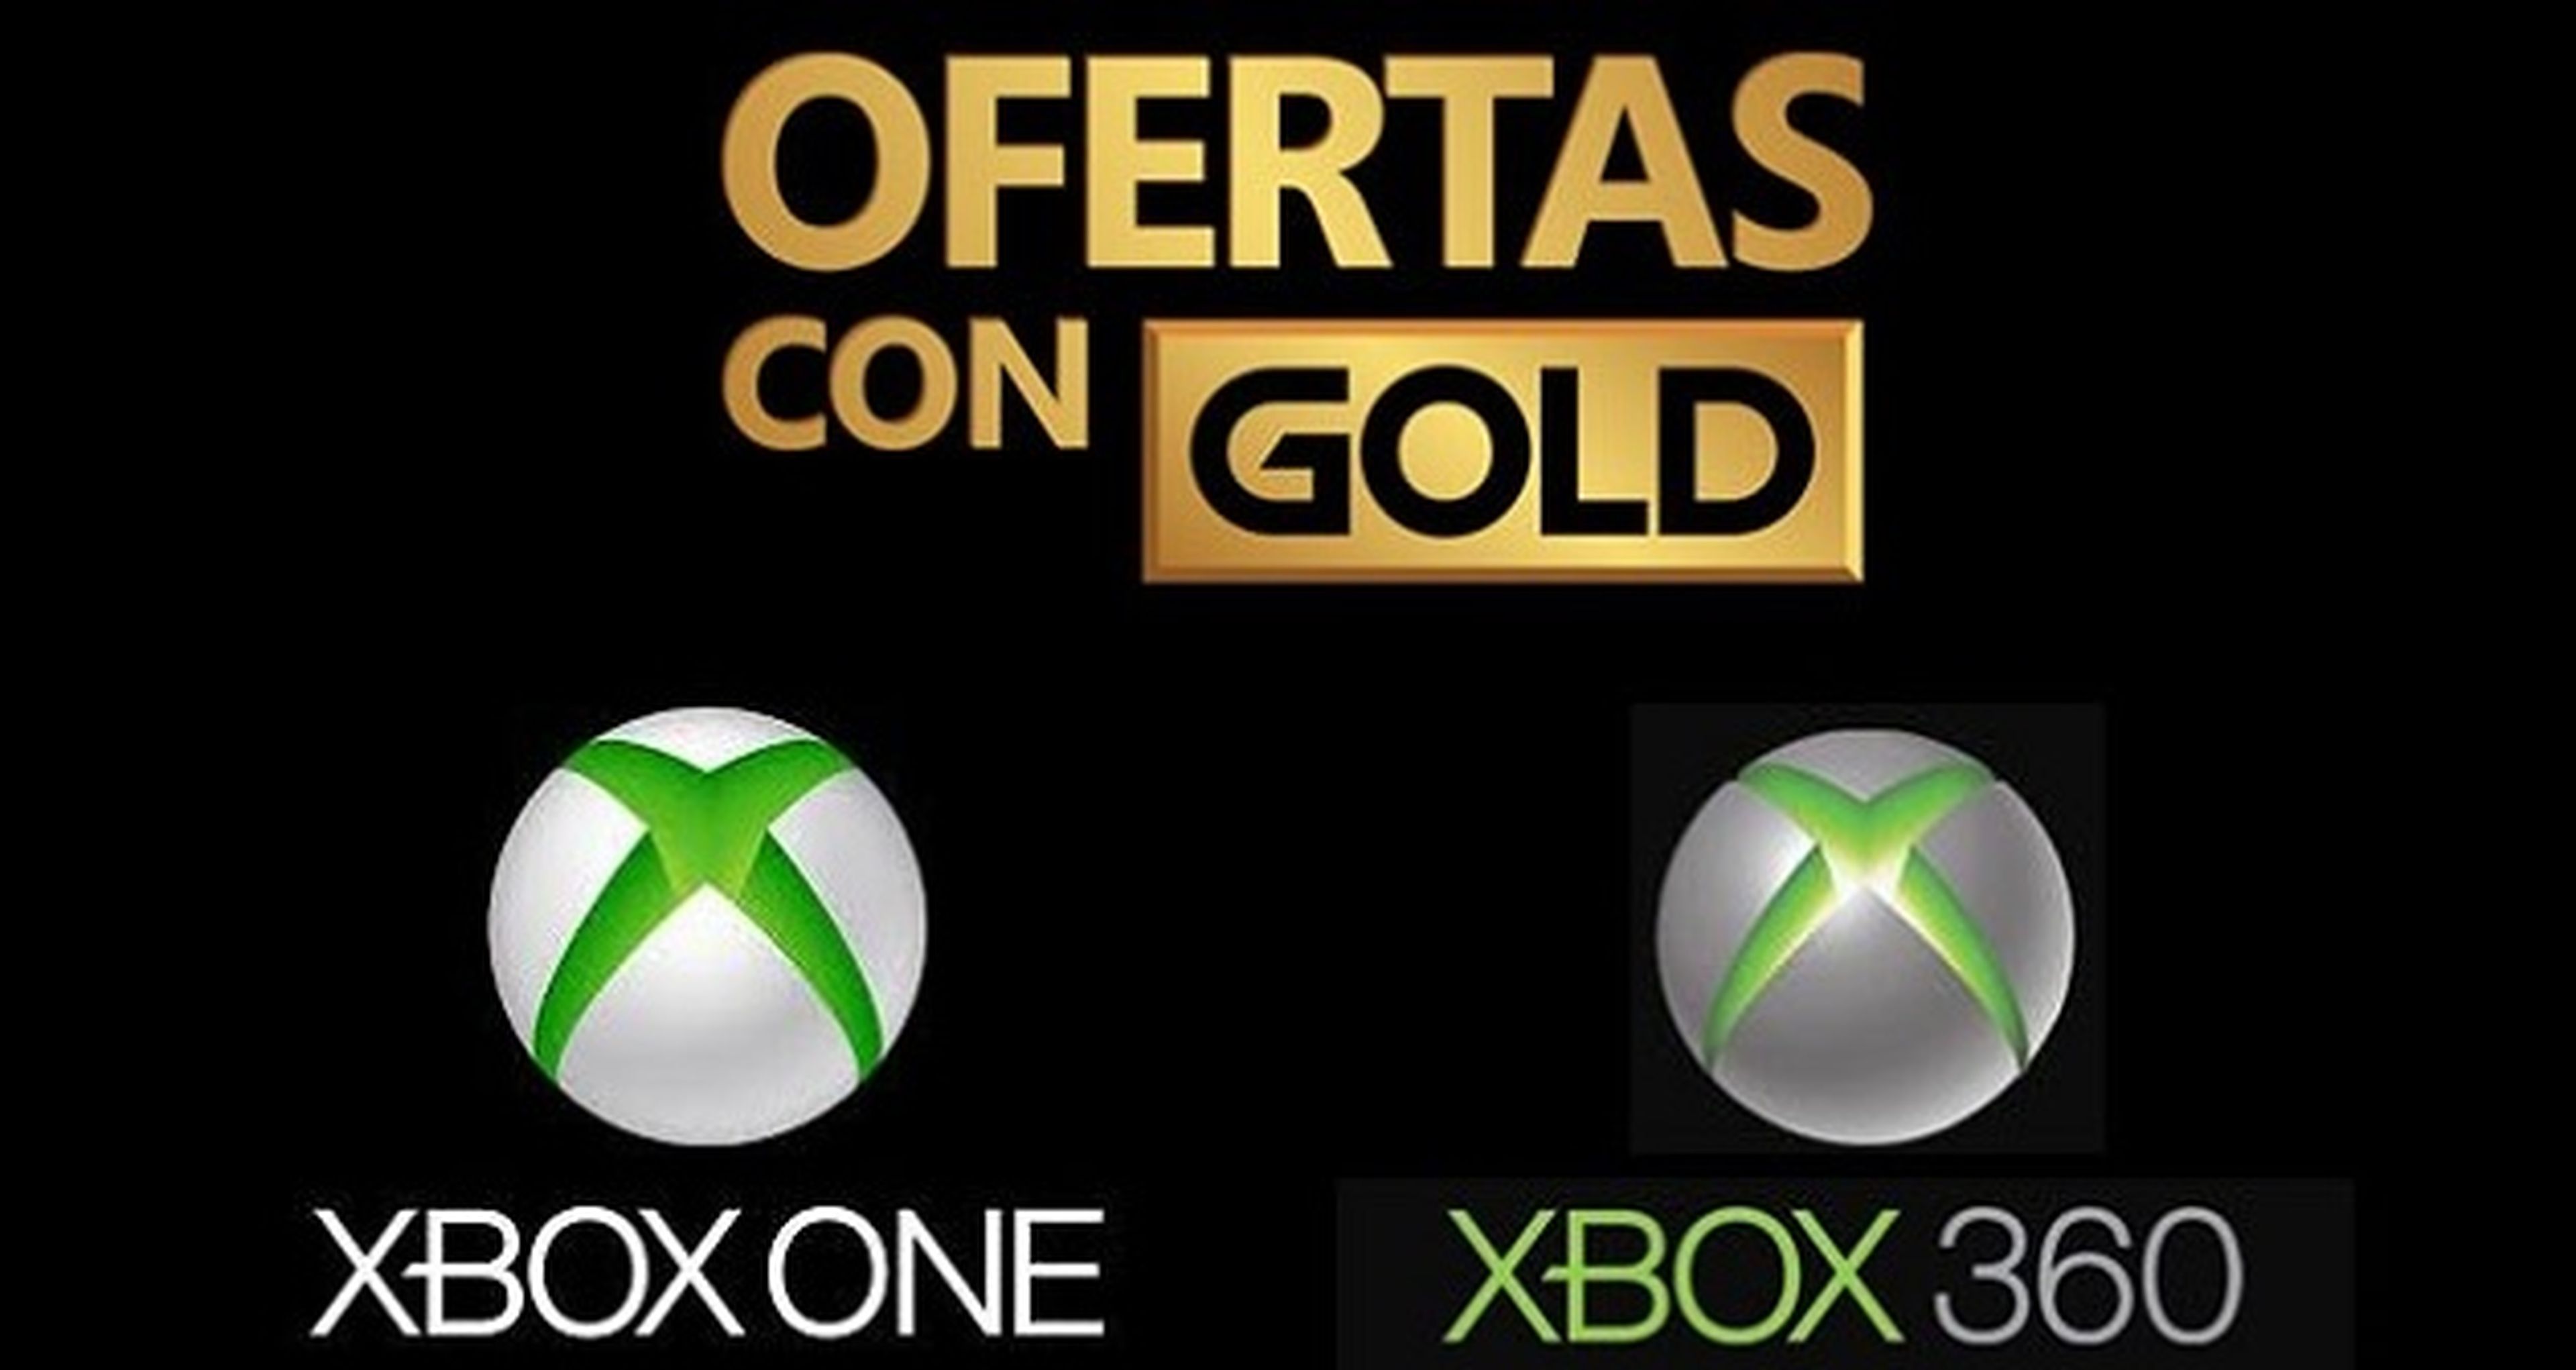 Xbox One y Xbox 360 - Ofertas con Gold de la semana